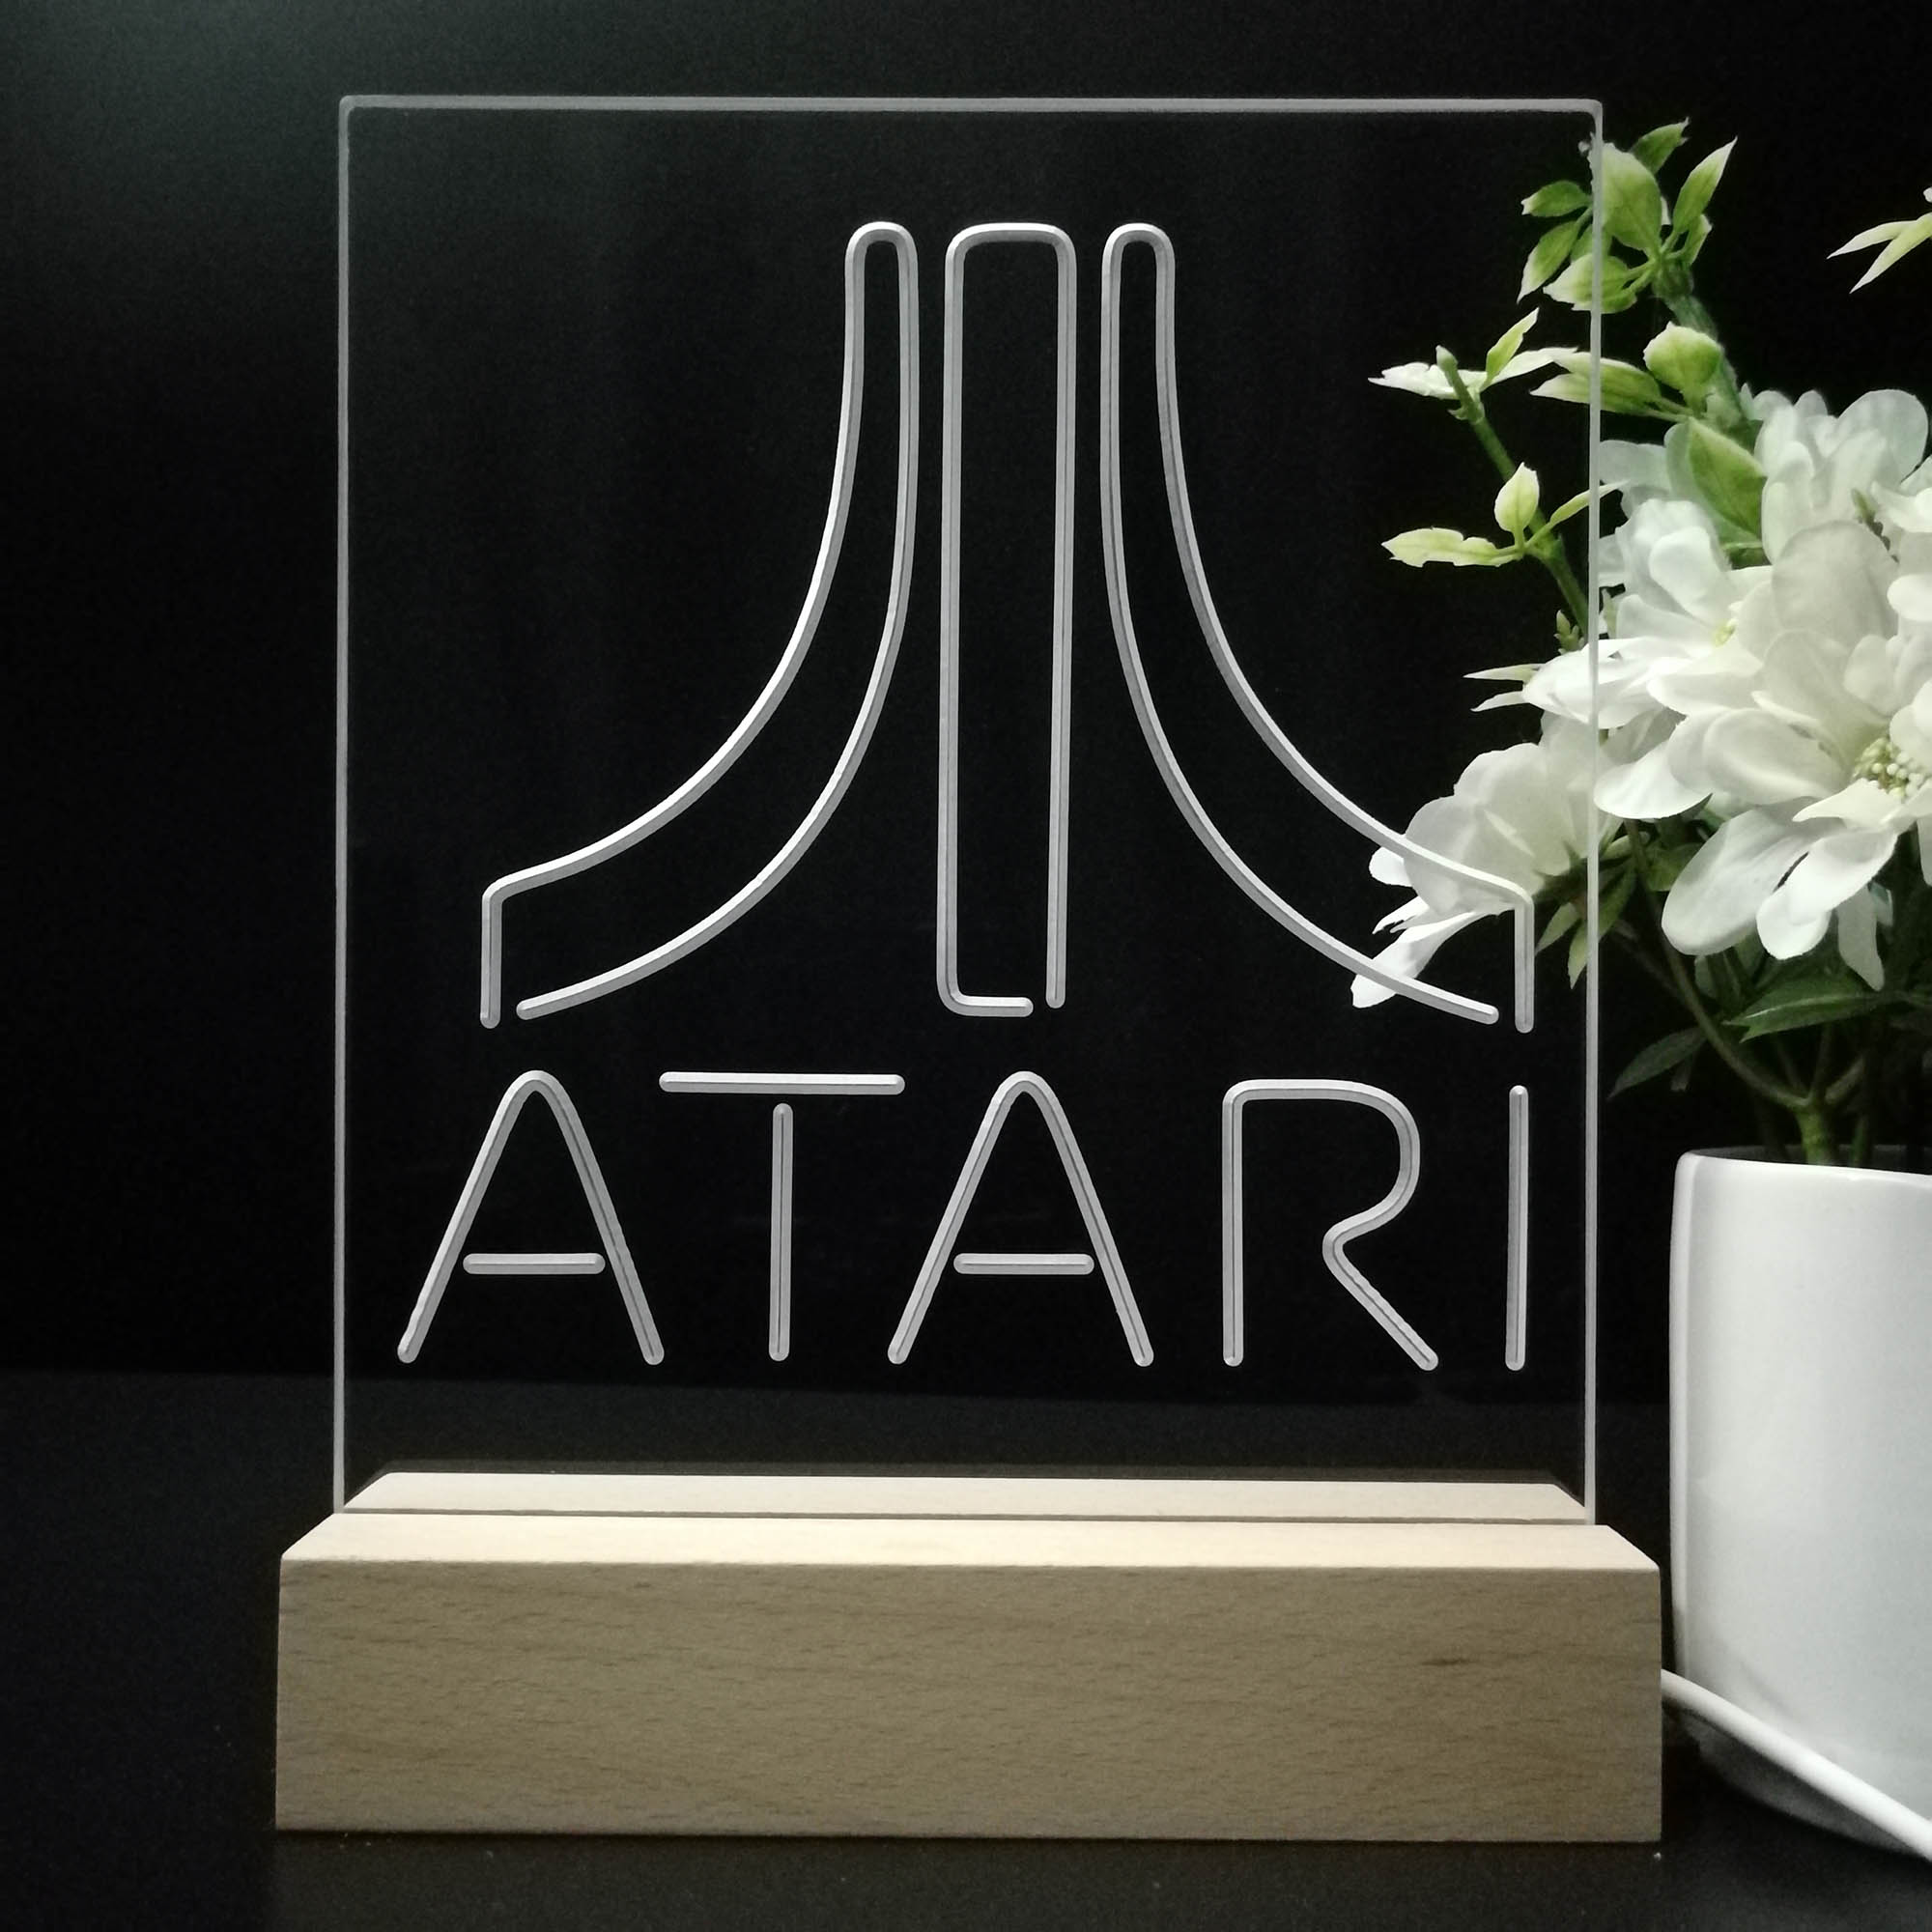 Atari Arcade Game Room LED Sign Lamp Display